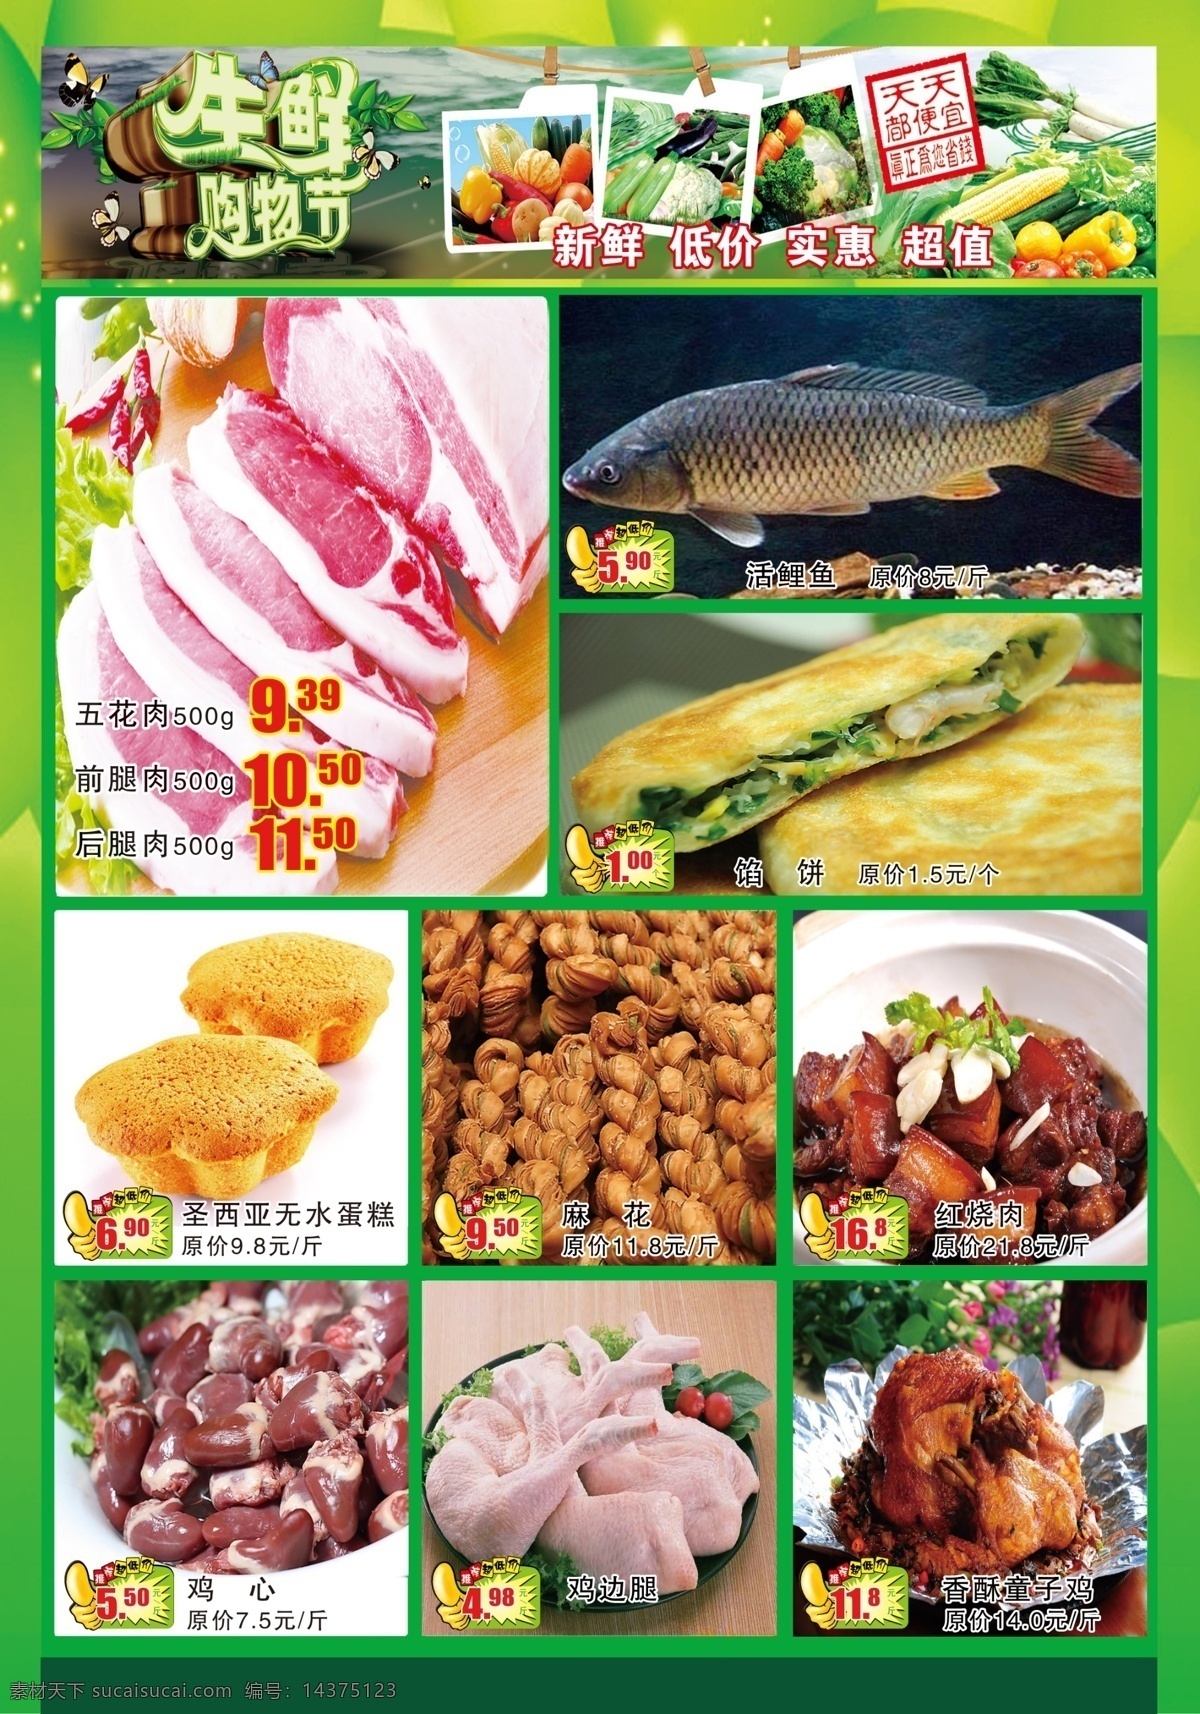 超市生鲜海报 猪肉 活鲤鱼 生鲜购物节 鸡边腿 生鲜海报 天天都便宜 广告设计模板 源文件